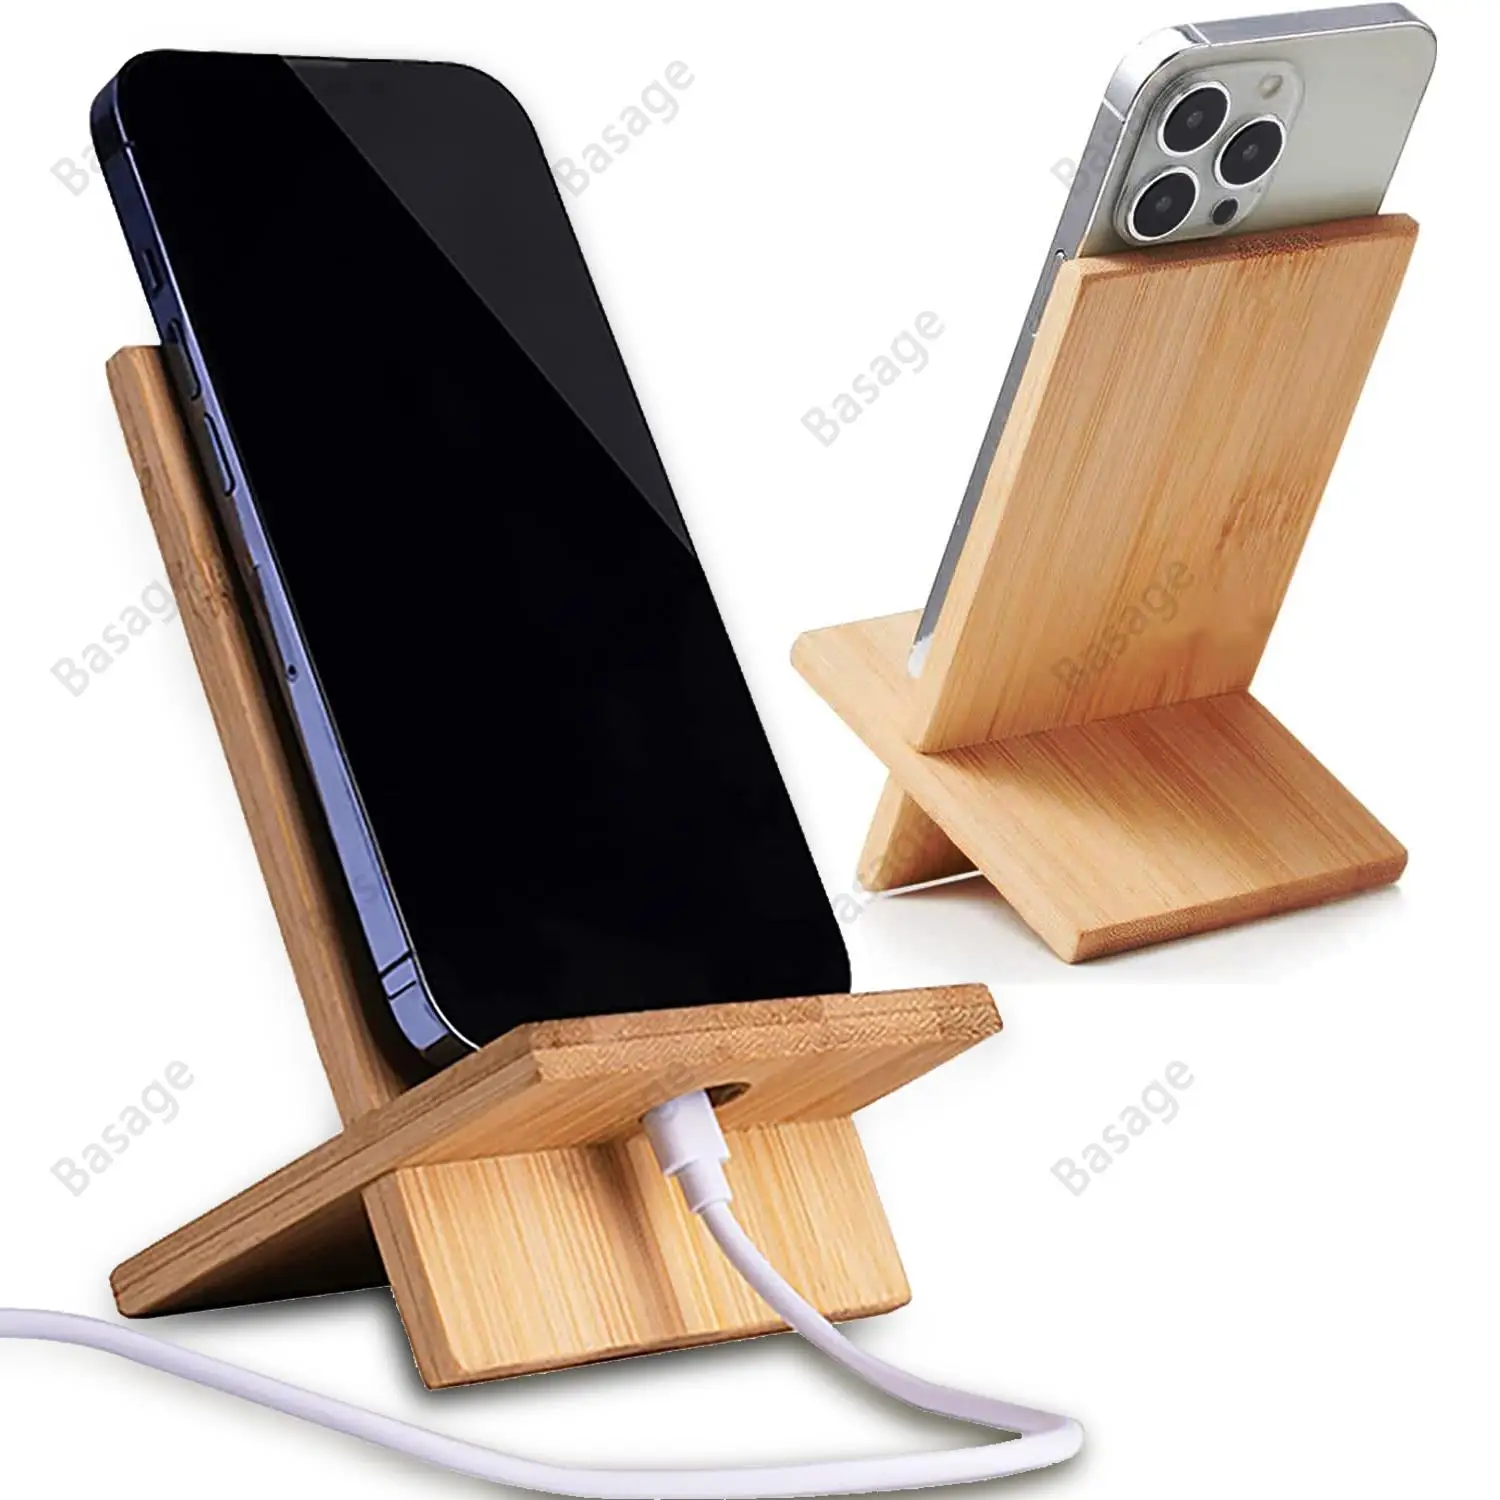 Supporto personalizzato in legno per cellulare - Stikets